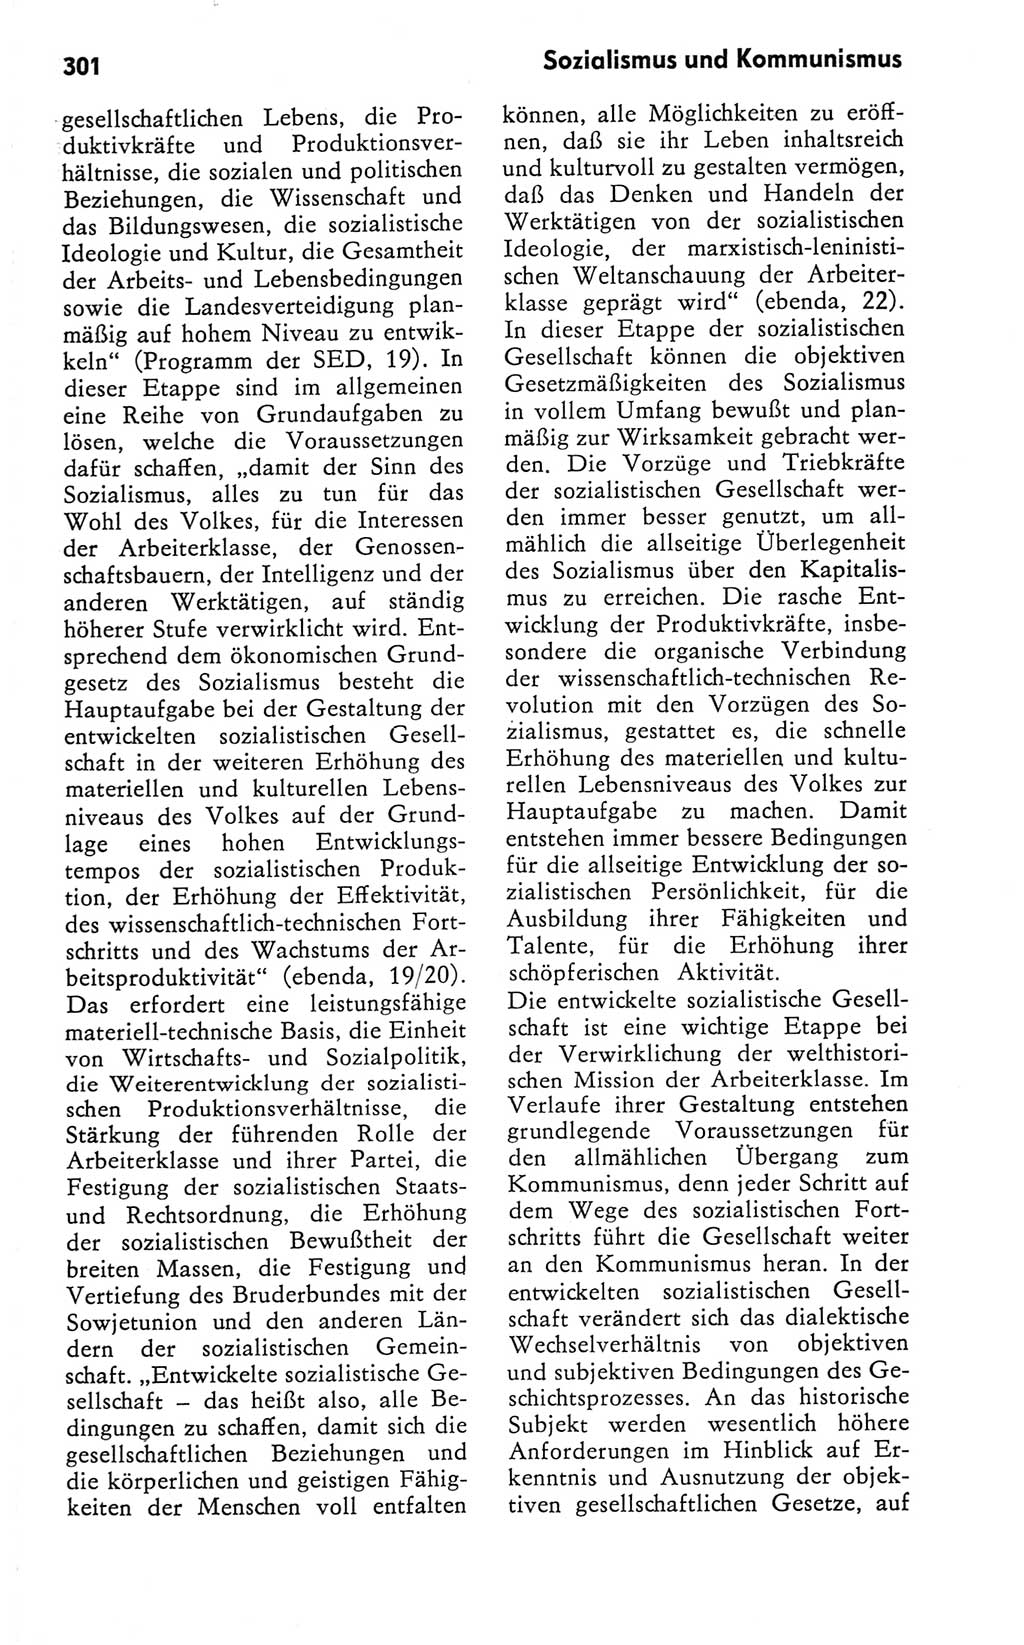 Kleines Wörterbuch der marxistisch-leninistischen Philosophie [Deutsche Demokratische Republik (DDR)] 1981, Seite 301 (Kl. Wb. ML Phil. DDR 1981, S. 301)